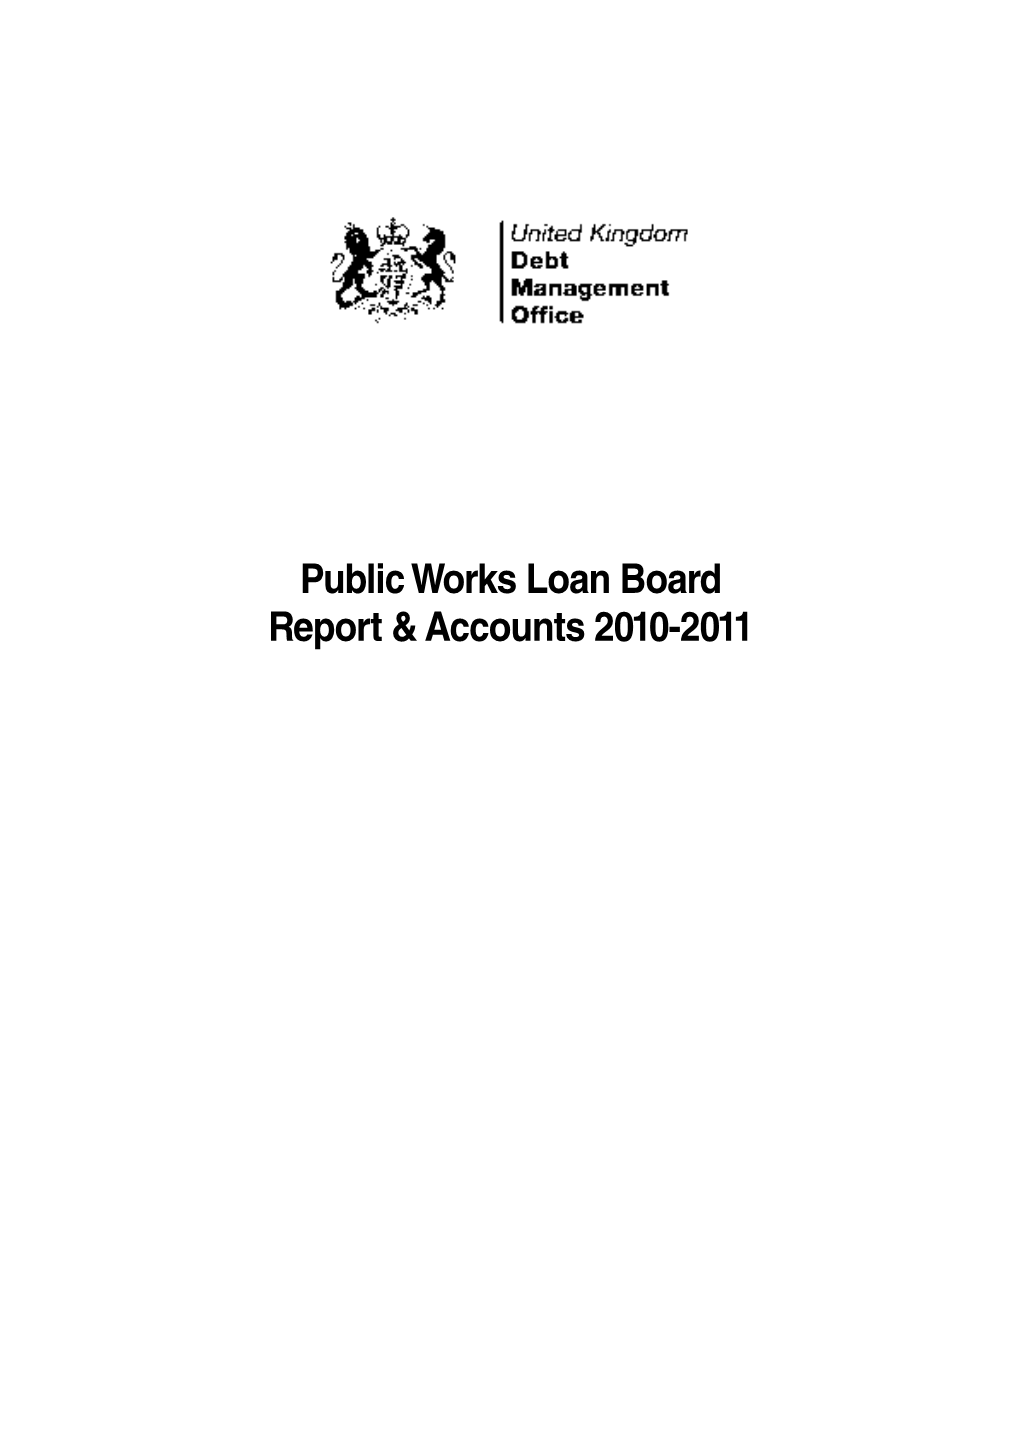 Public Works Loan Board Report & Accounts 2010-2011 HC 1072